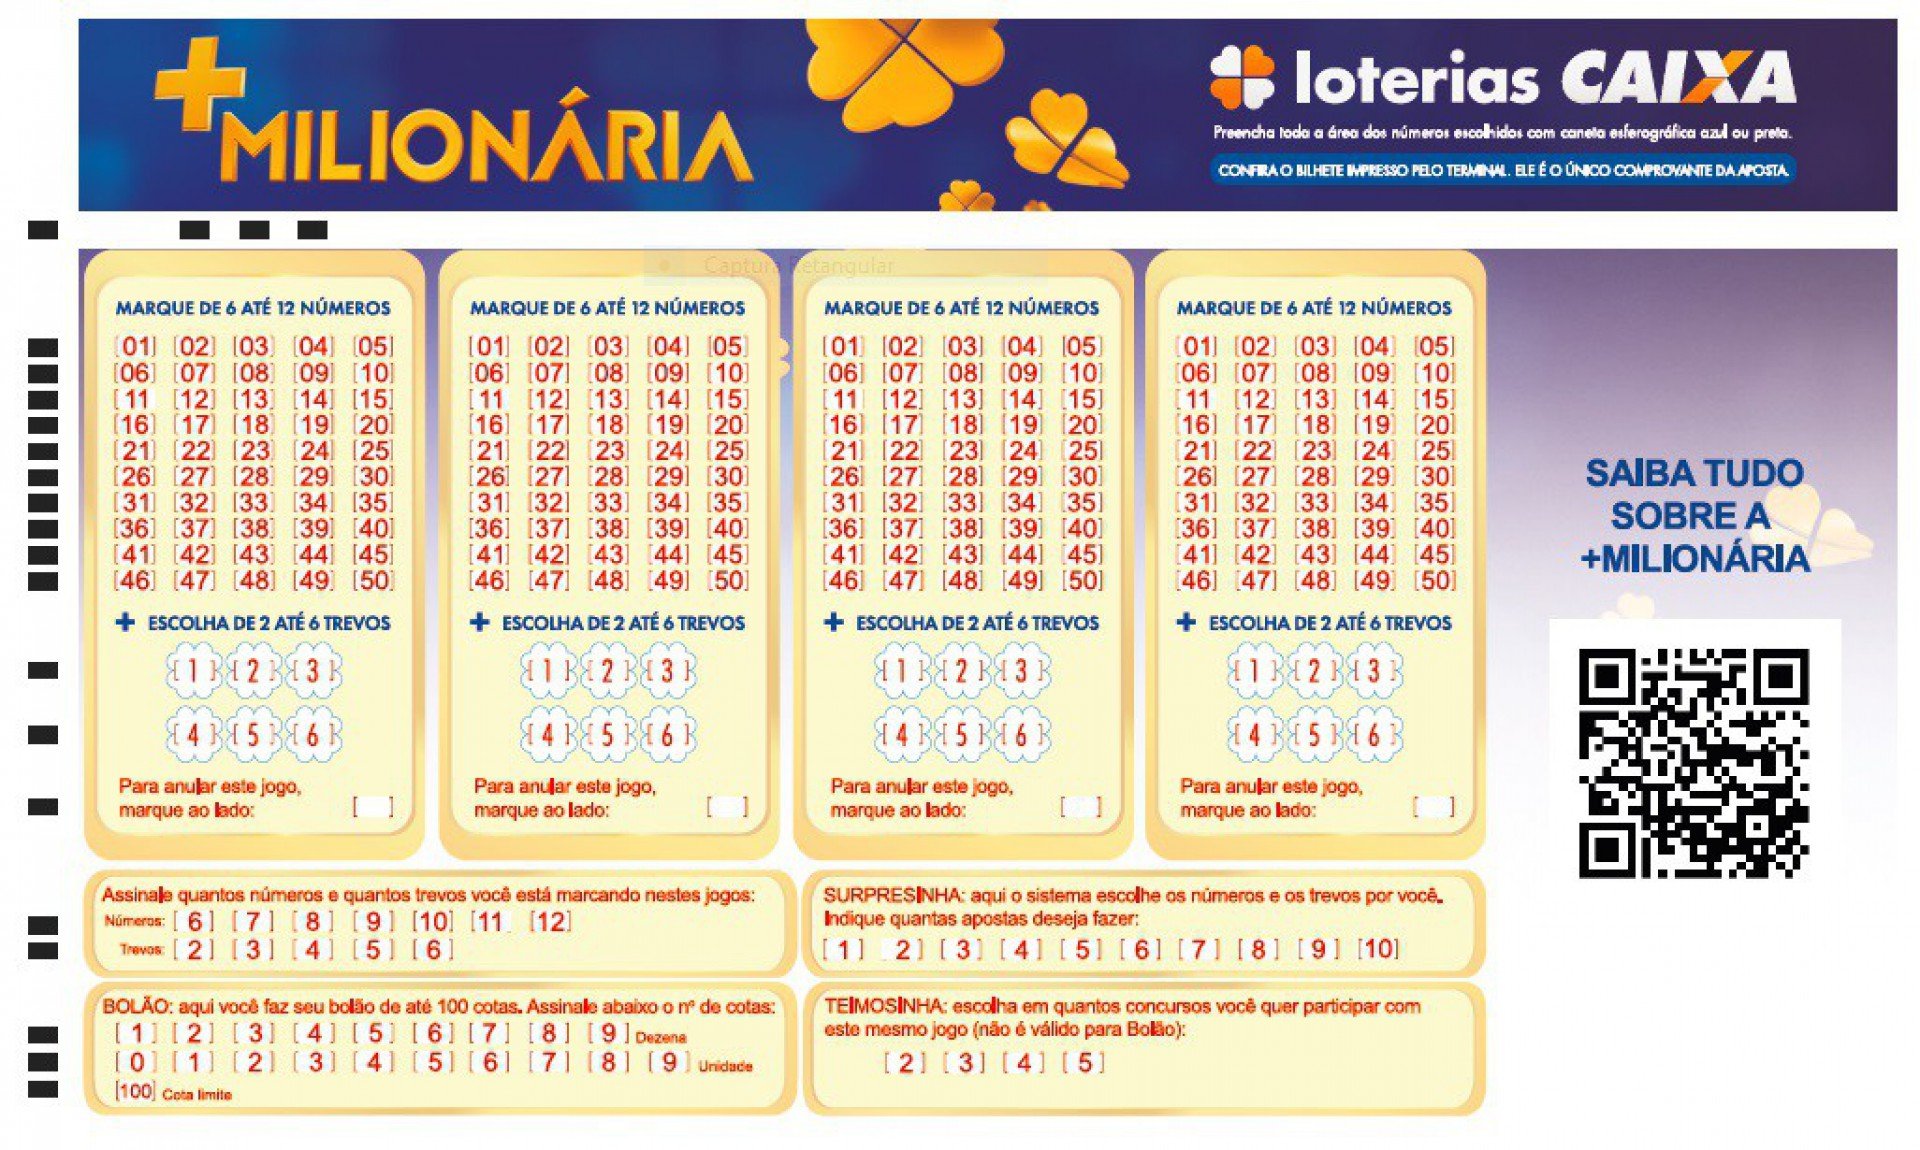 Loterias da Caixa lançam novo modelo de aposta em colunas